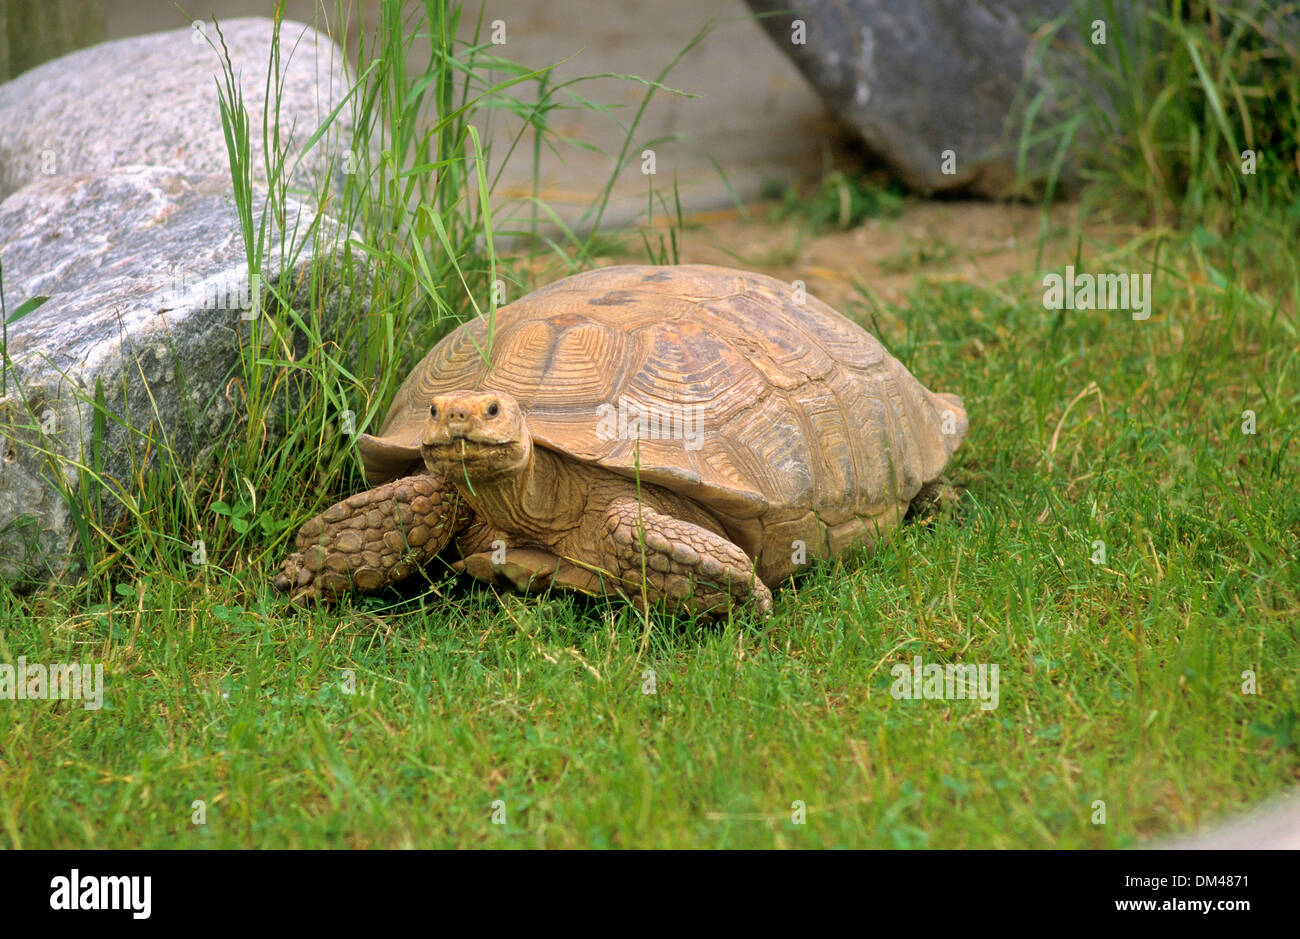 Hermann's tortoise (Testudo hermanni), Griechische Landschildkröte (Testudo hermanni) auf Wiese Stock Photo